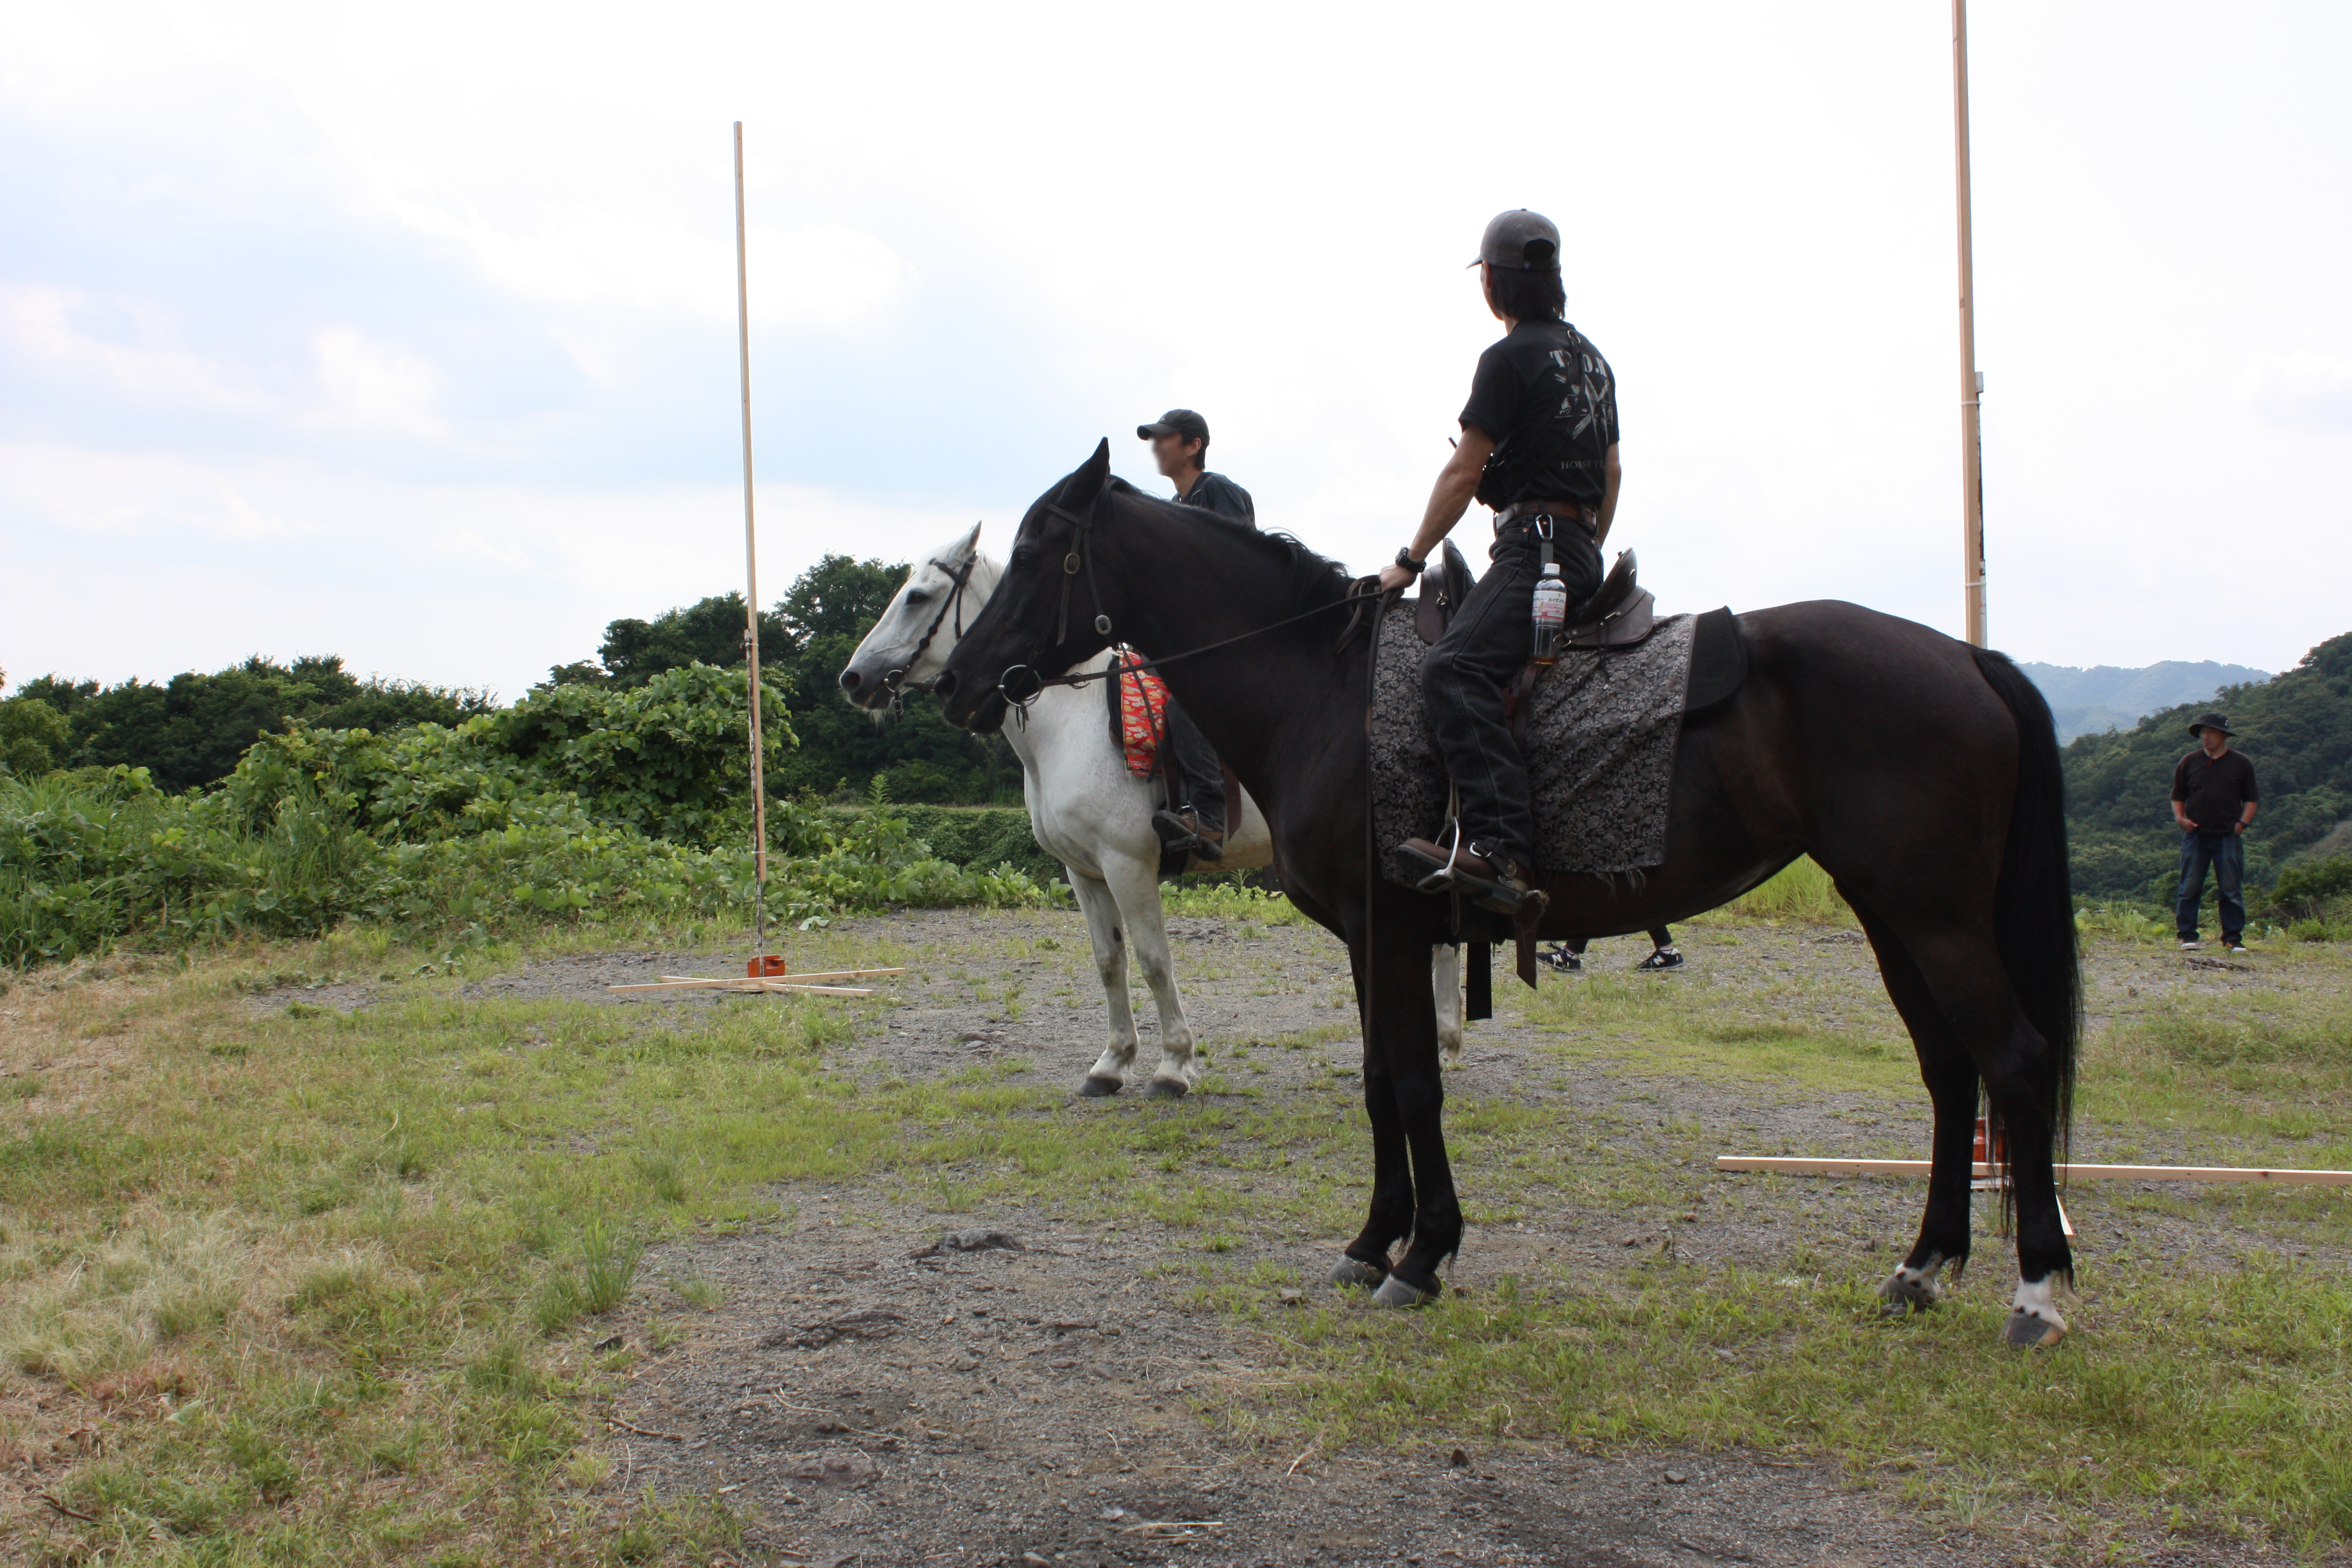 劉備と陸遜が馬に乗って颯爽と駆ける姿が絵になる撮影風景でした。